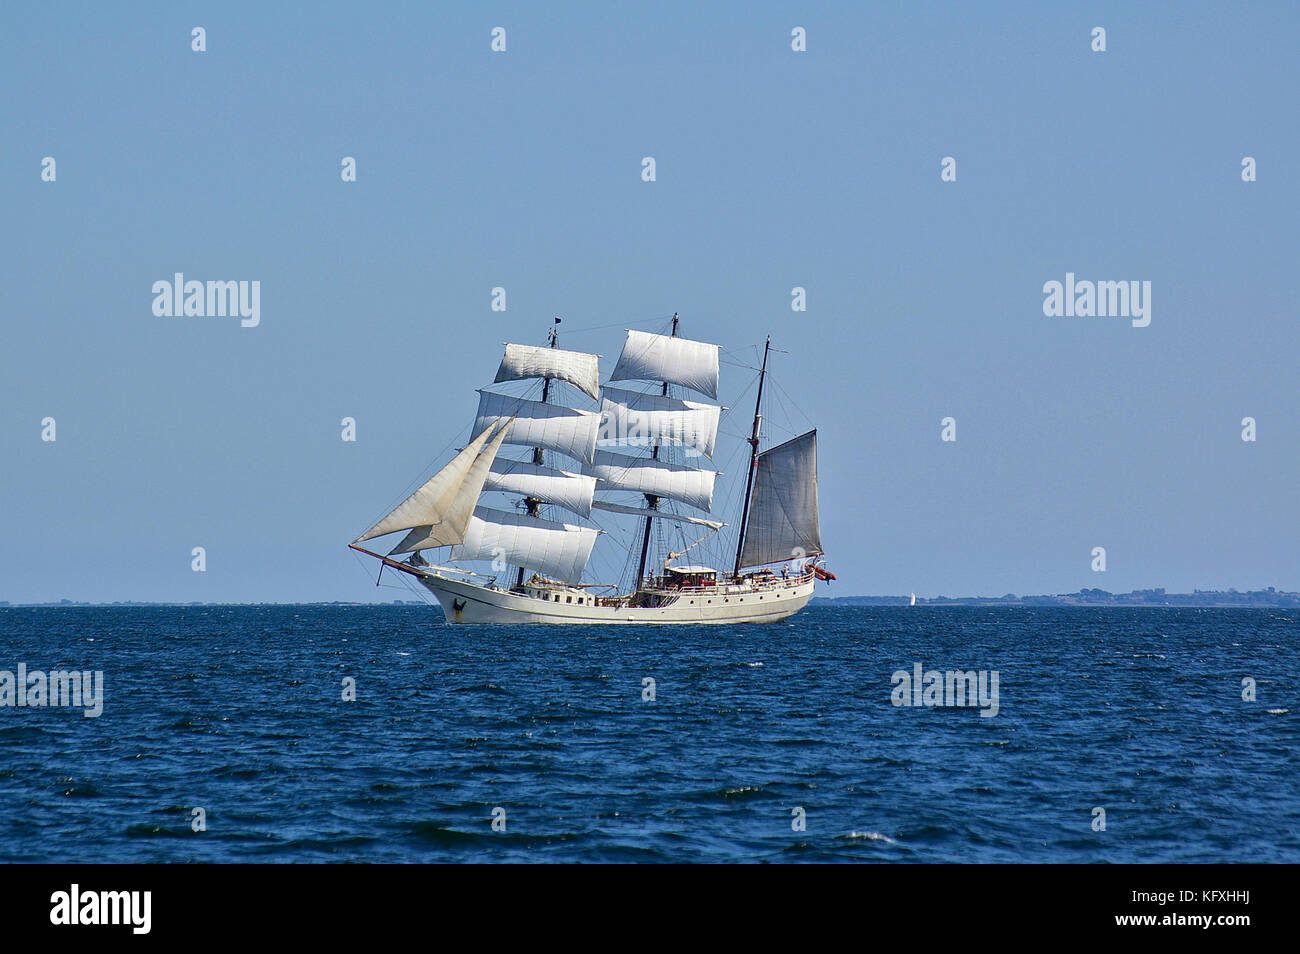 Piazza-truccate white nave a vela in mare con un lontano shore nel lontano sullo sfondo Foto Stock